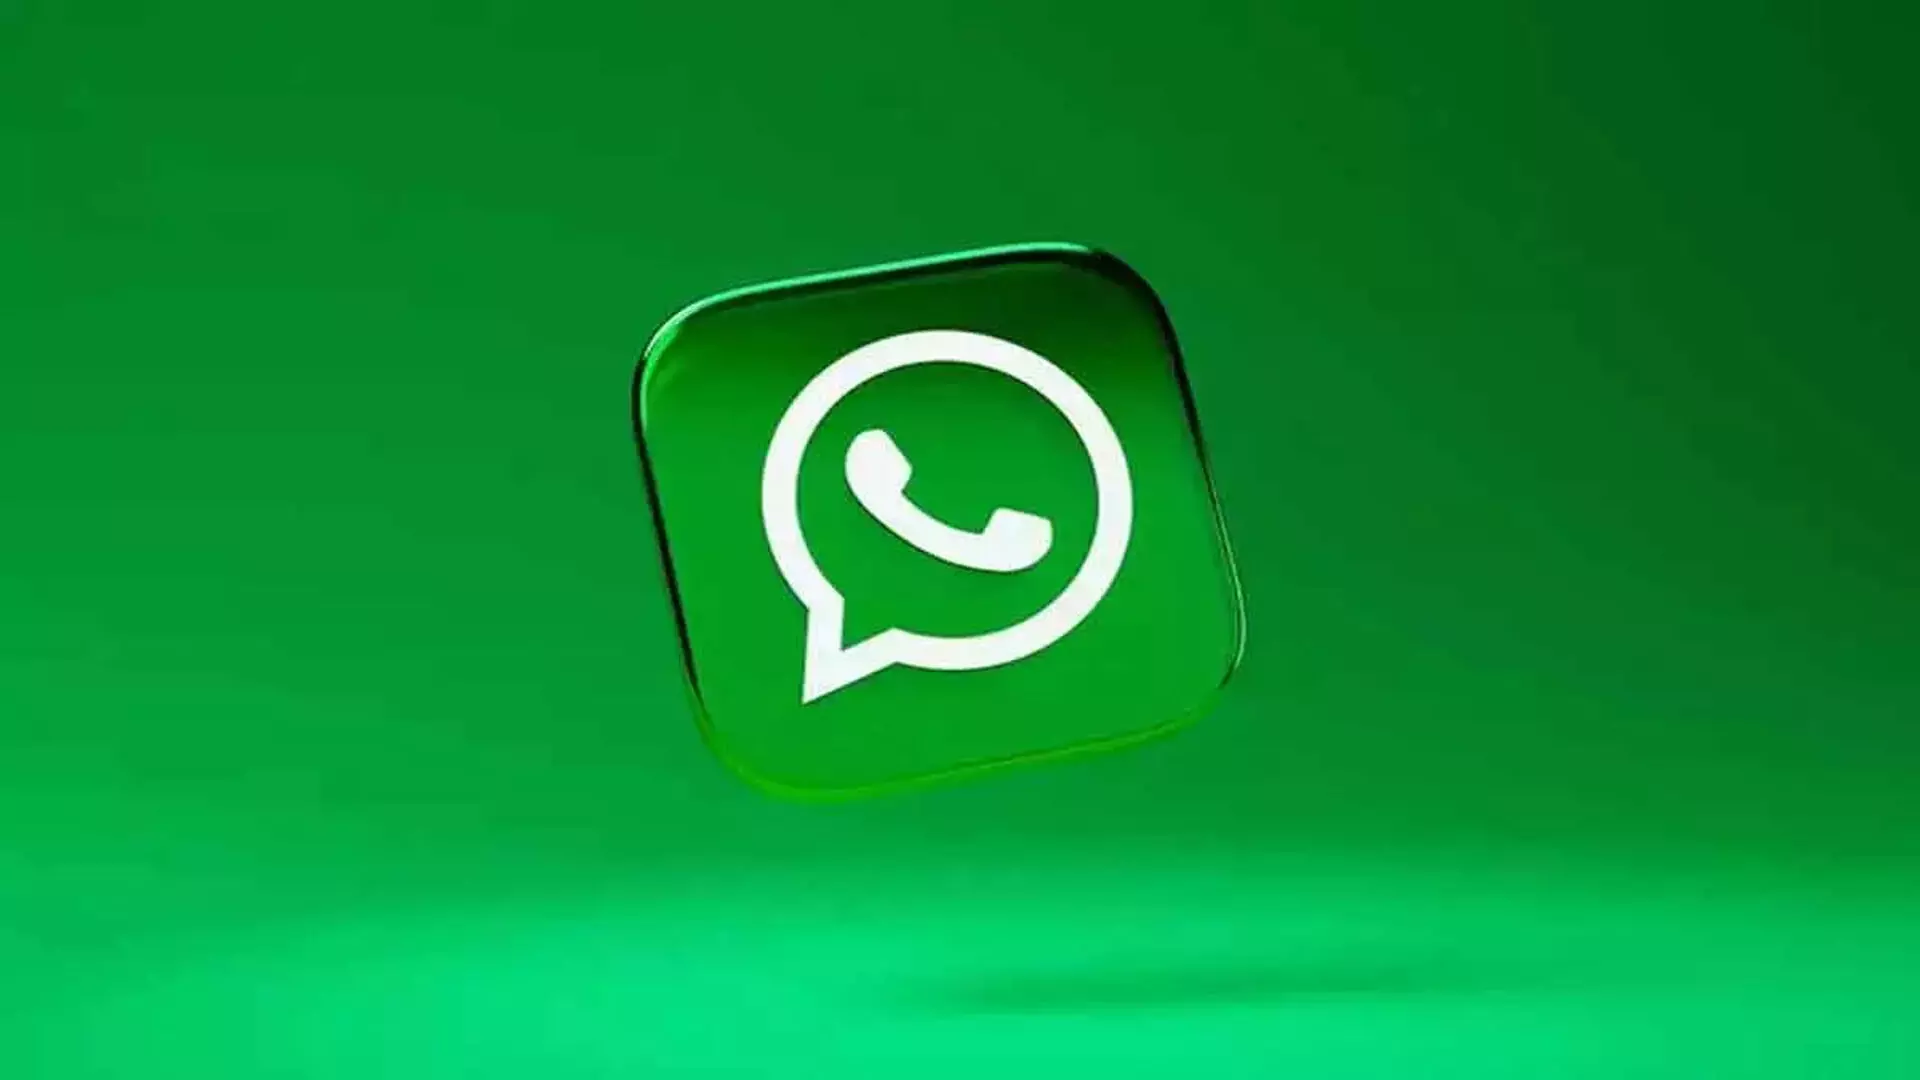 WhatsApp के अब अमेरिका में 100 मिलियन मासिक सक्रिय उपयोगकर्ता- मार्क जुकरबर्ग